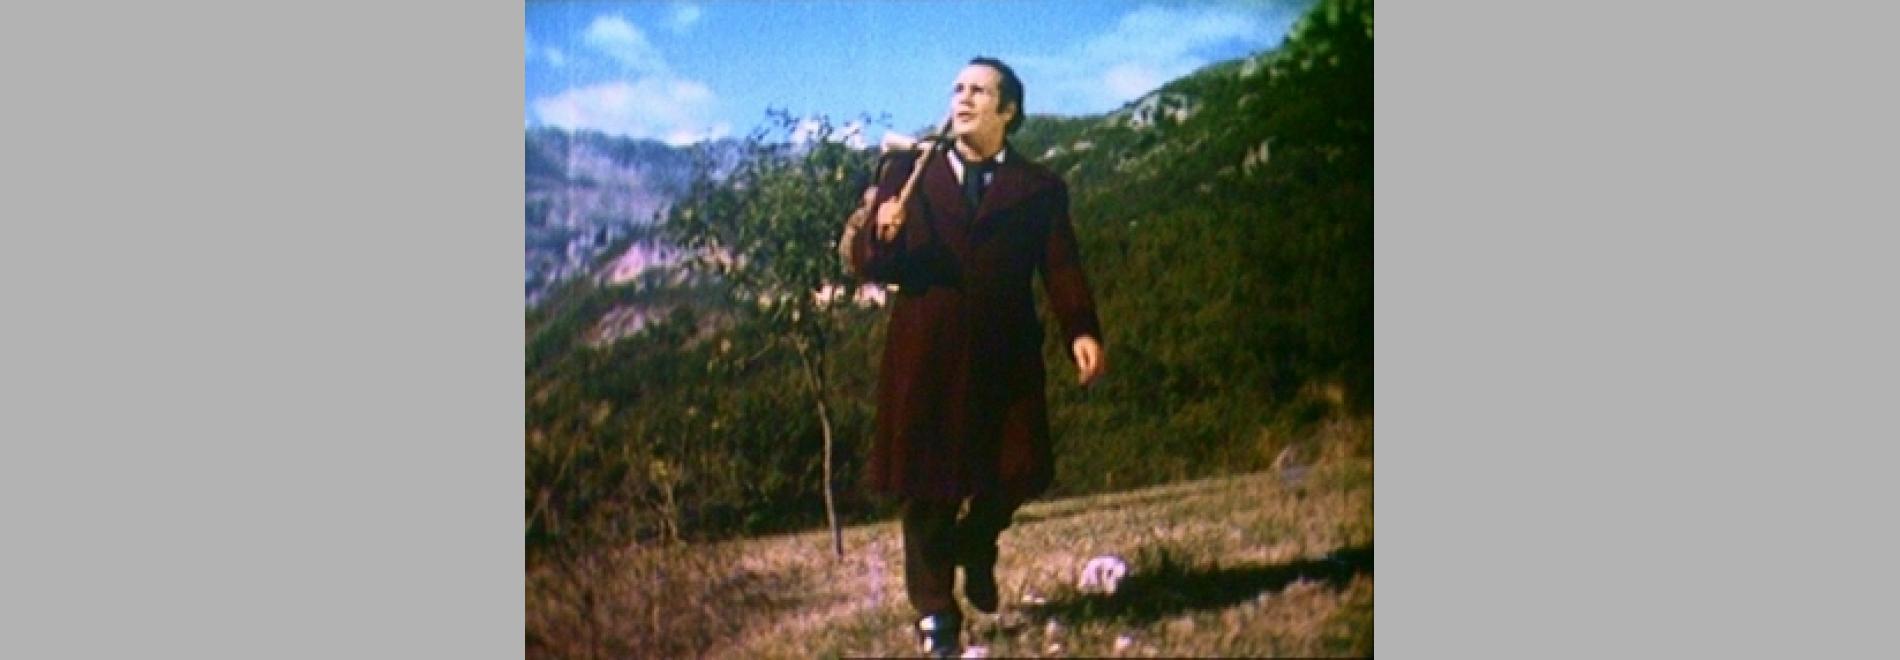 La Belle meunière (Marcel Pagnol, 1949)